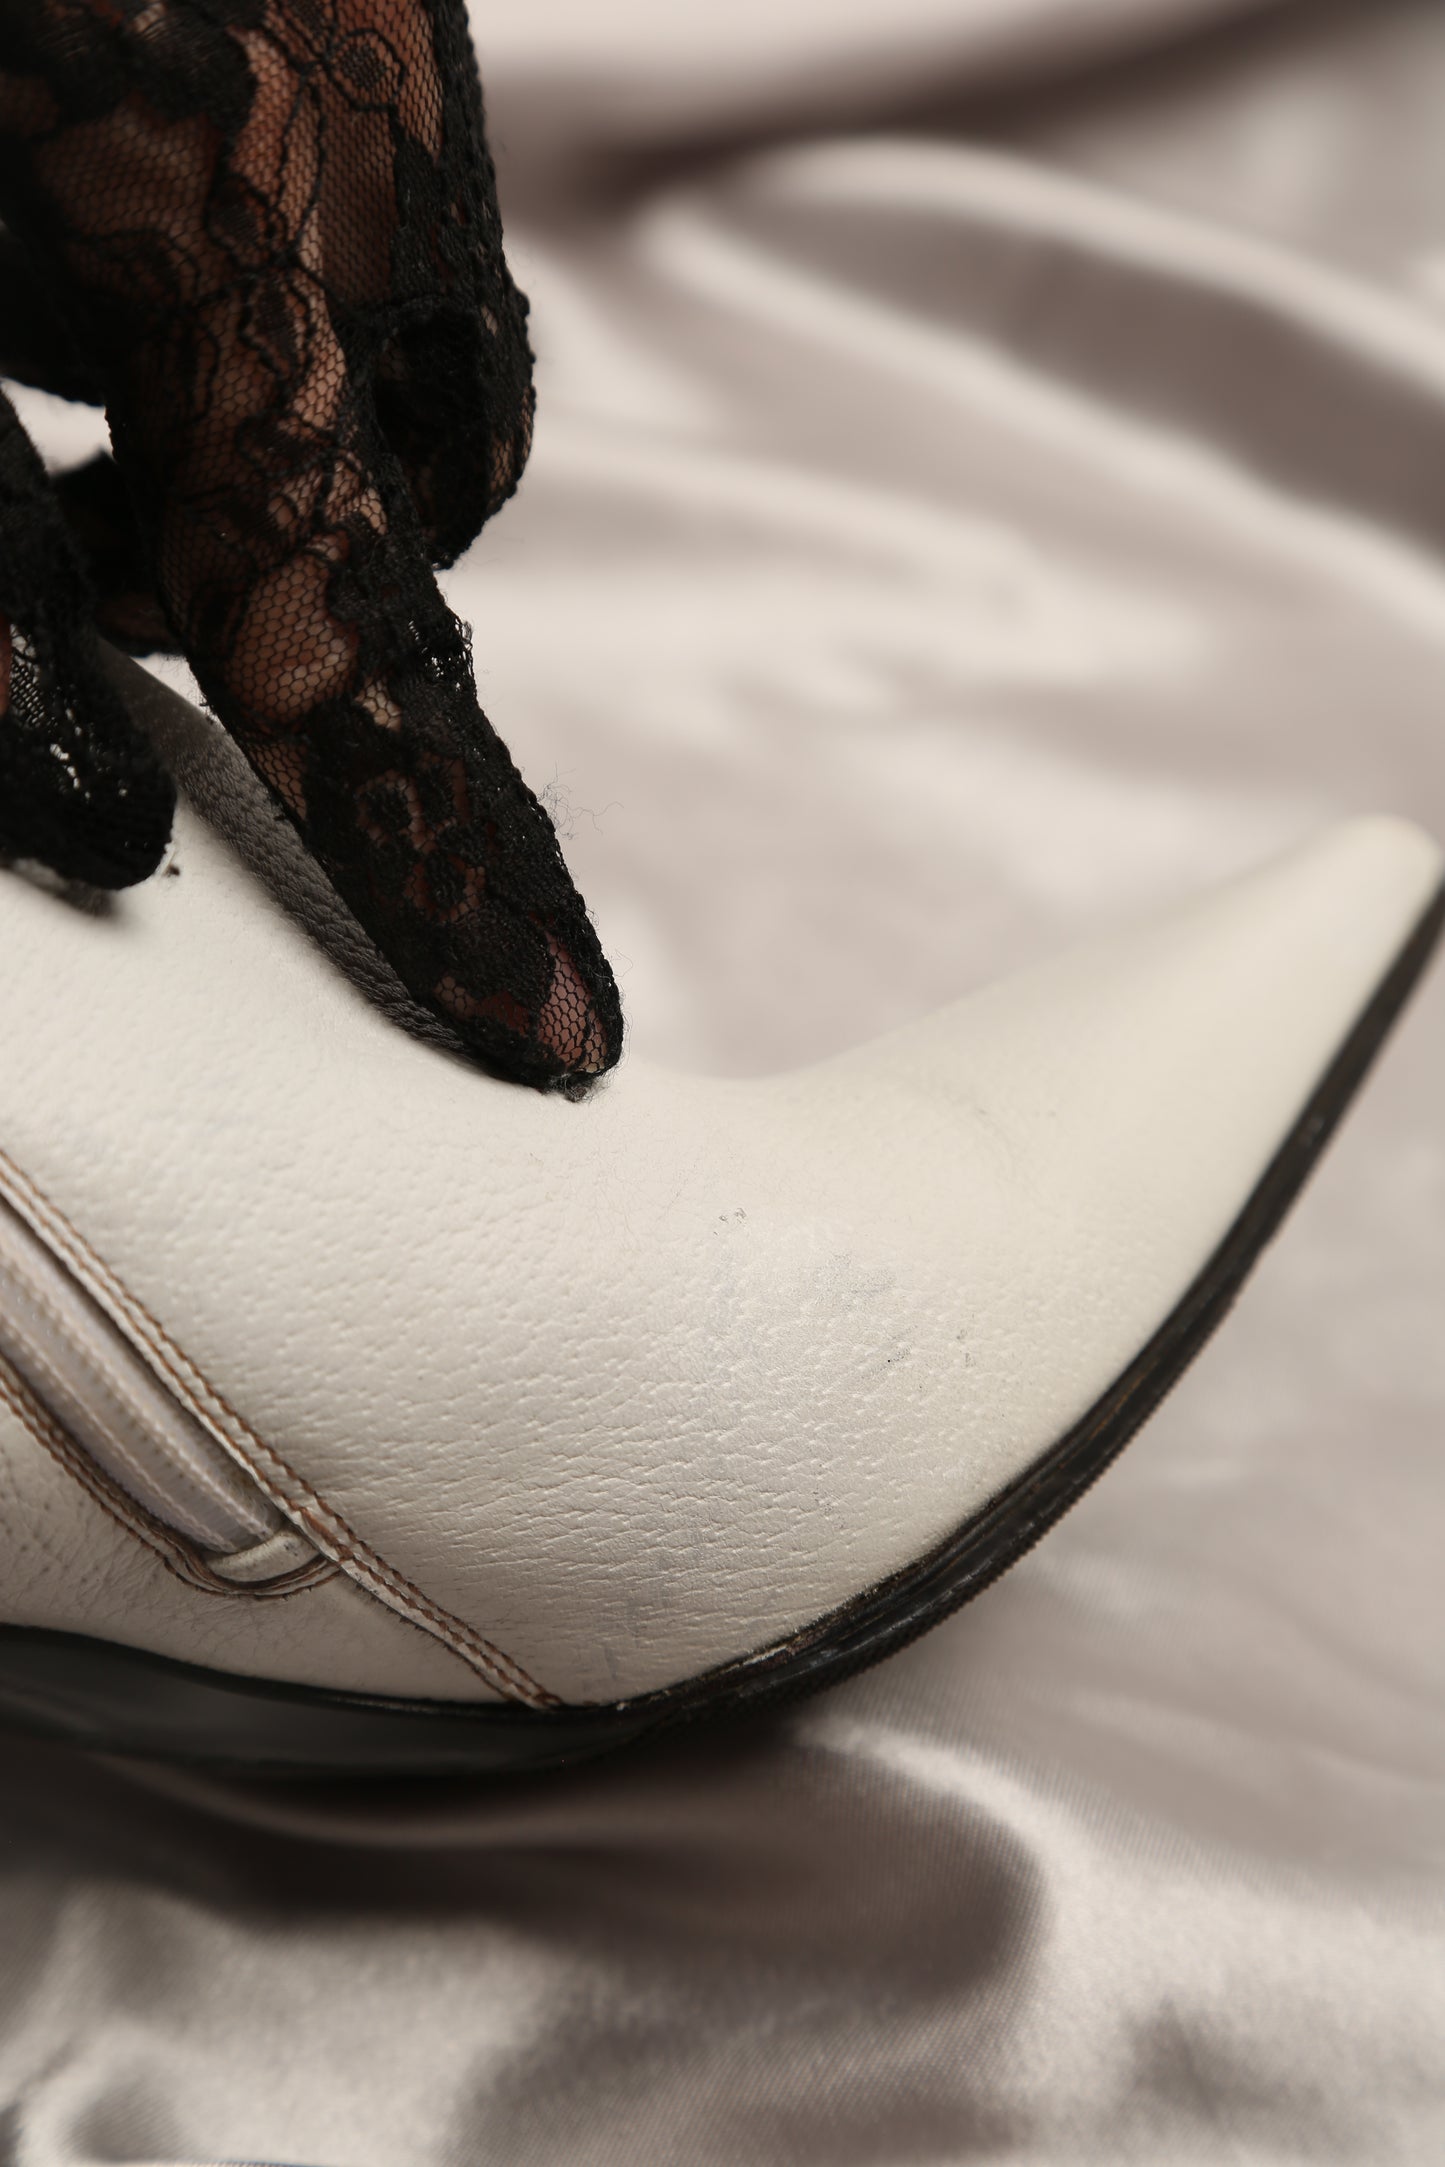 Rare GUCCI White Boots